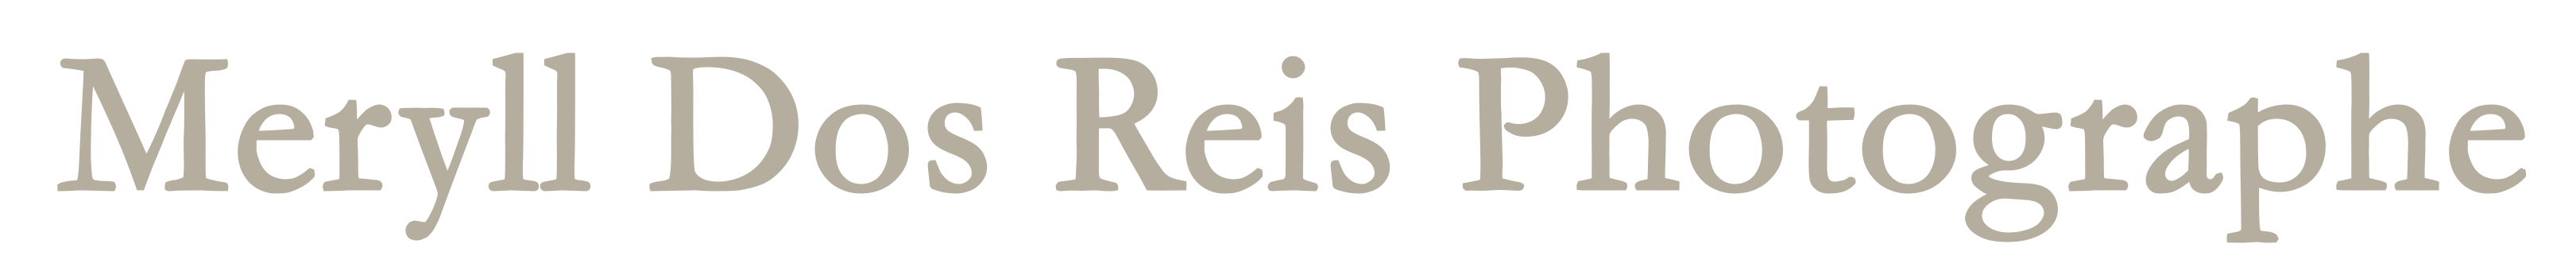 Logo Meryll Dos Reis Photographe